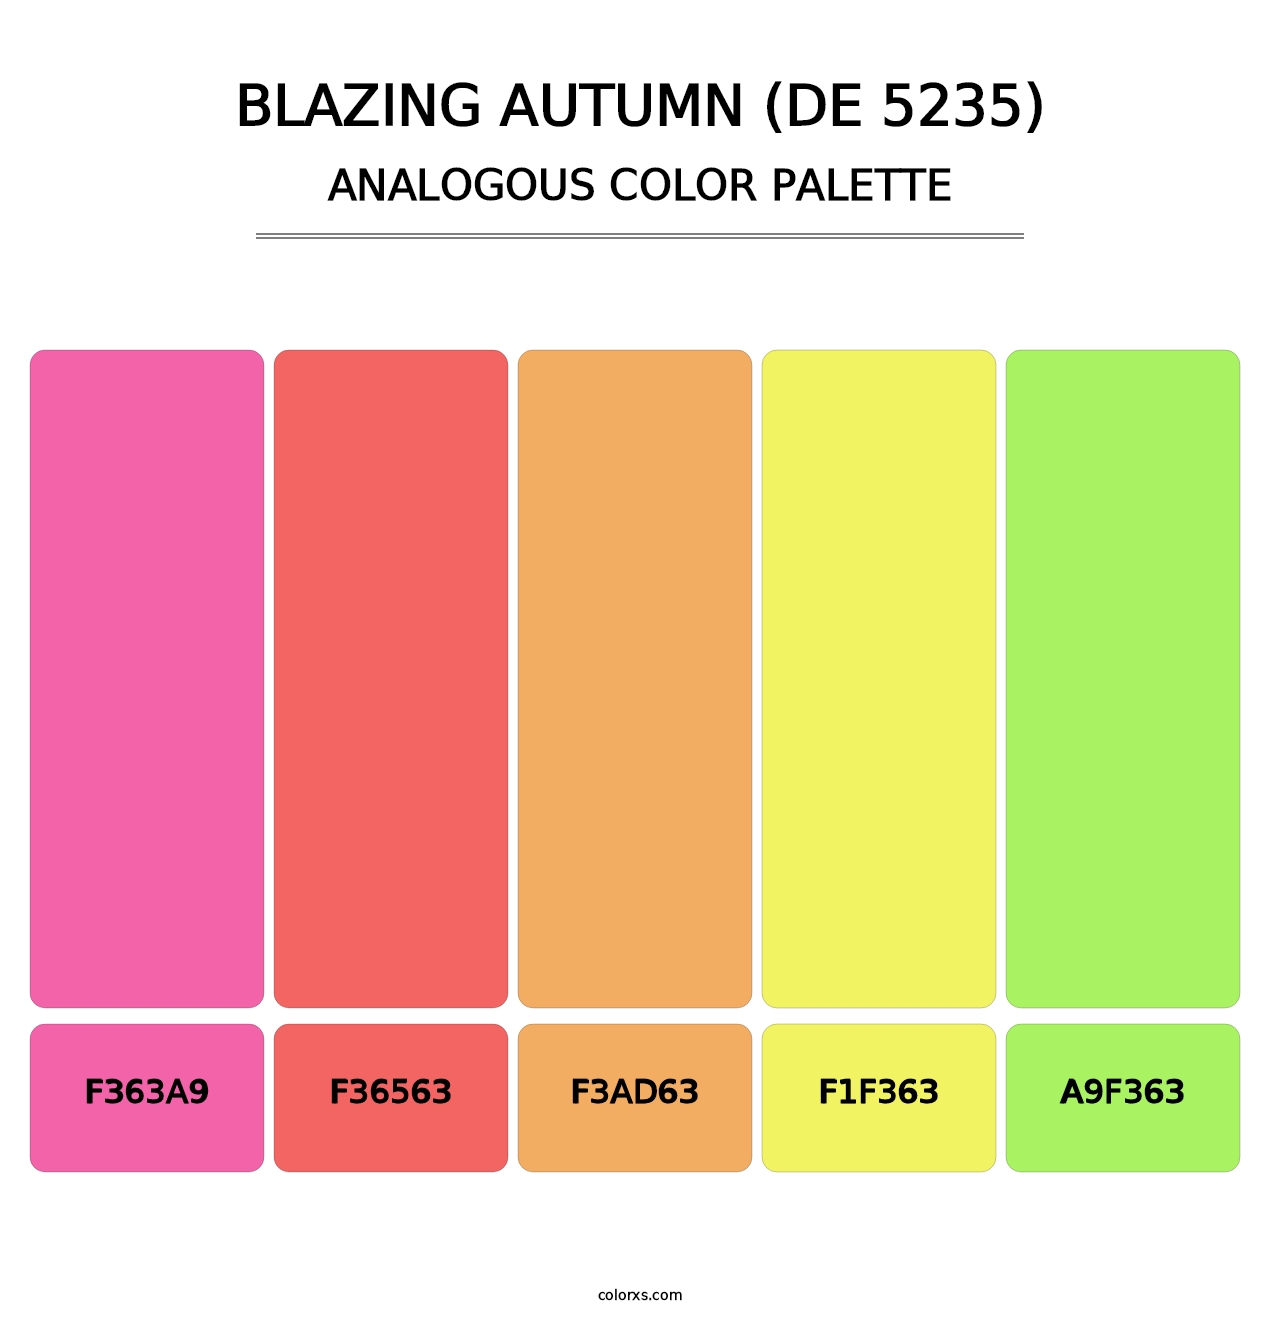 Blazing Autumn (DE 5235) - Analogous Color Palette